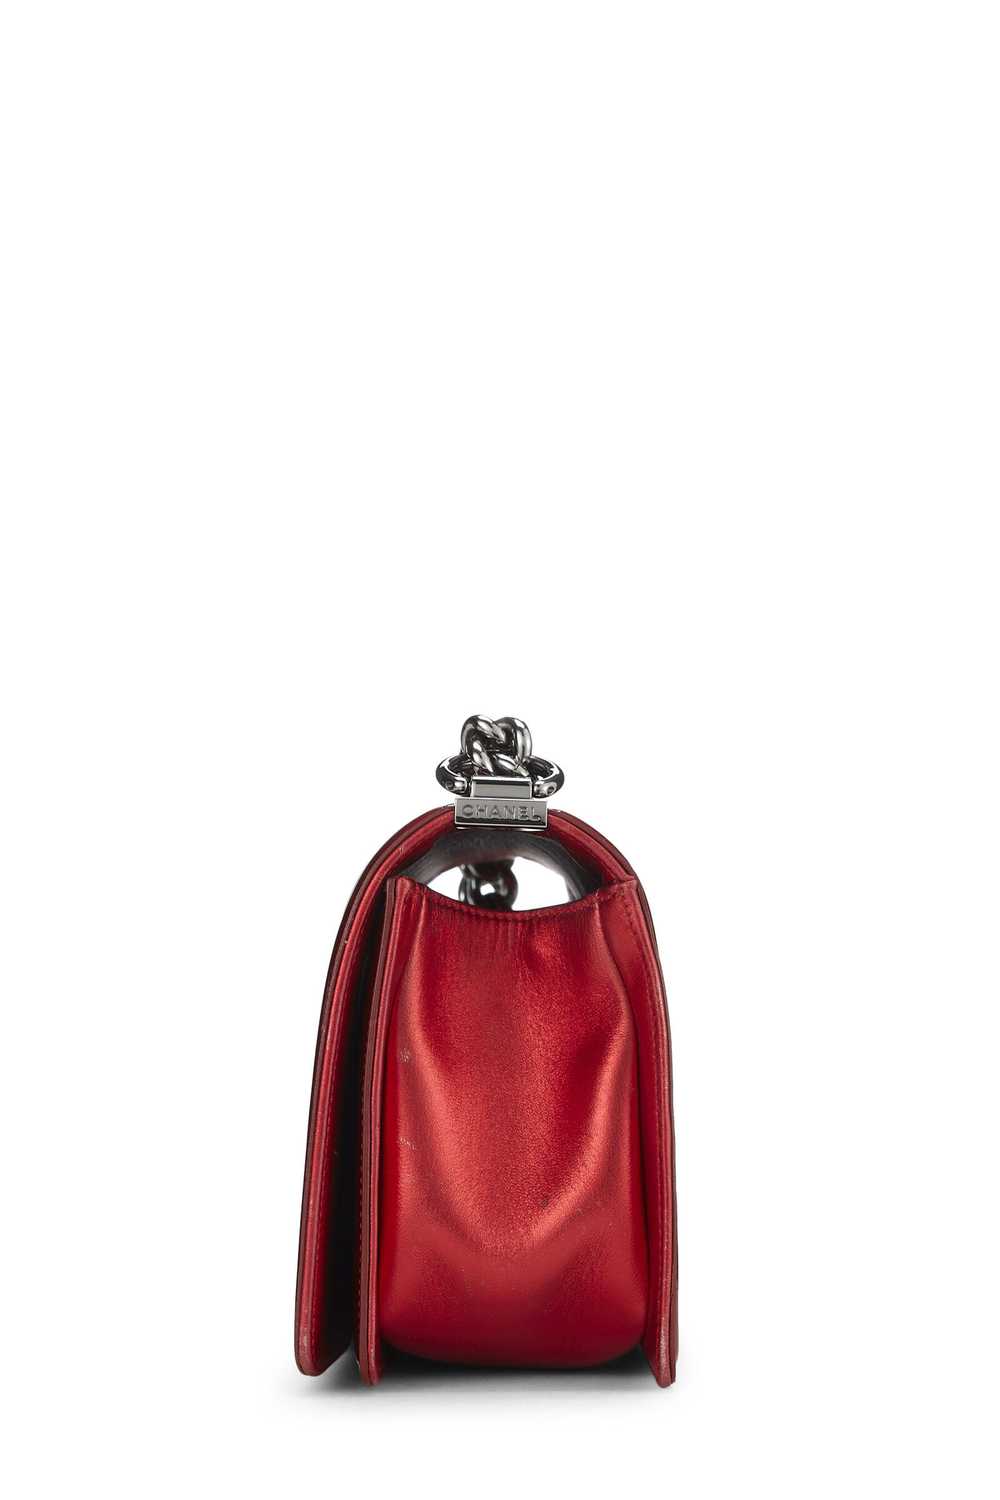 Metallic Red Patent Leather Boy Bag Medium - image 3